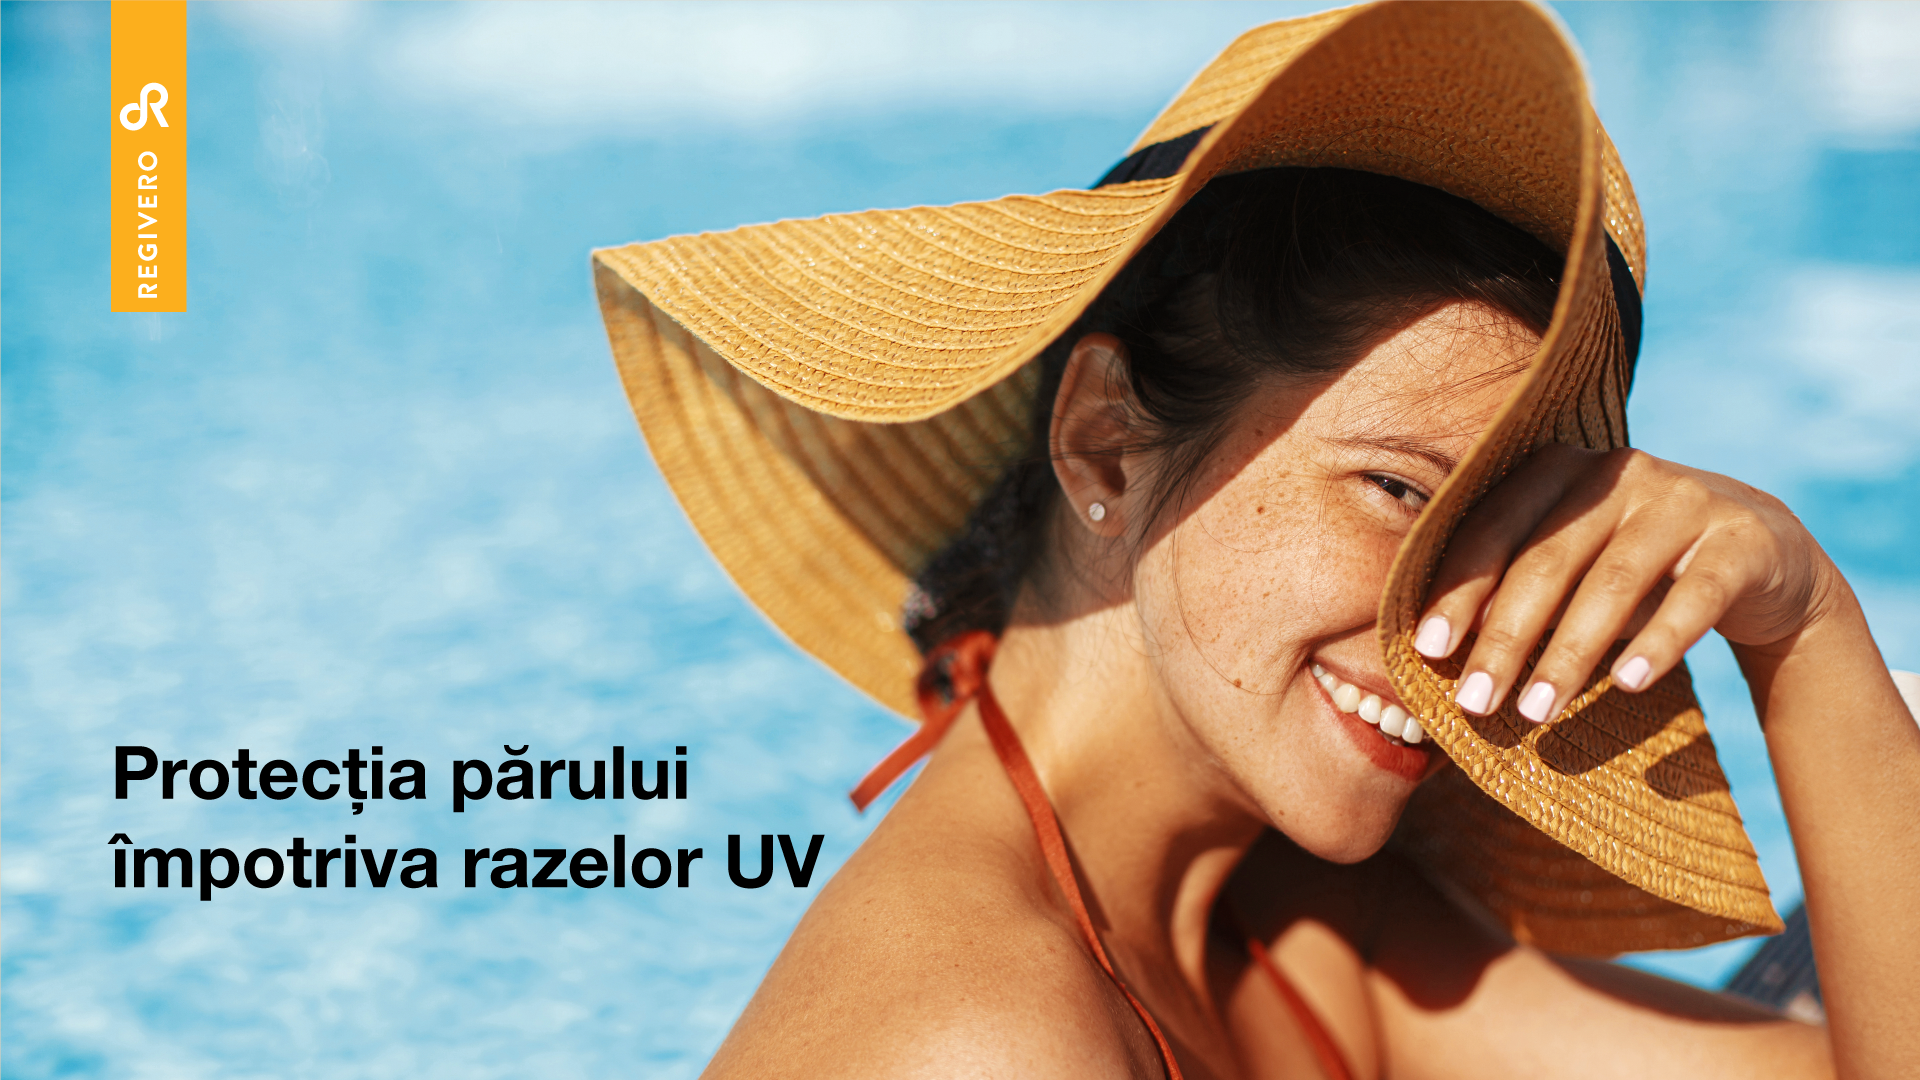 Protectia parului impotriva razelor UV